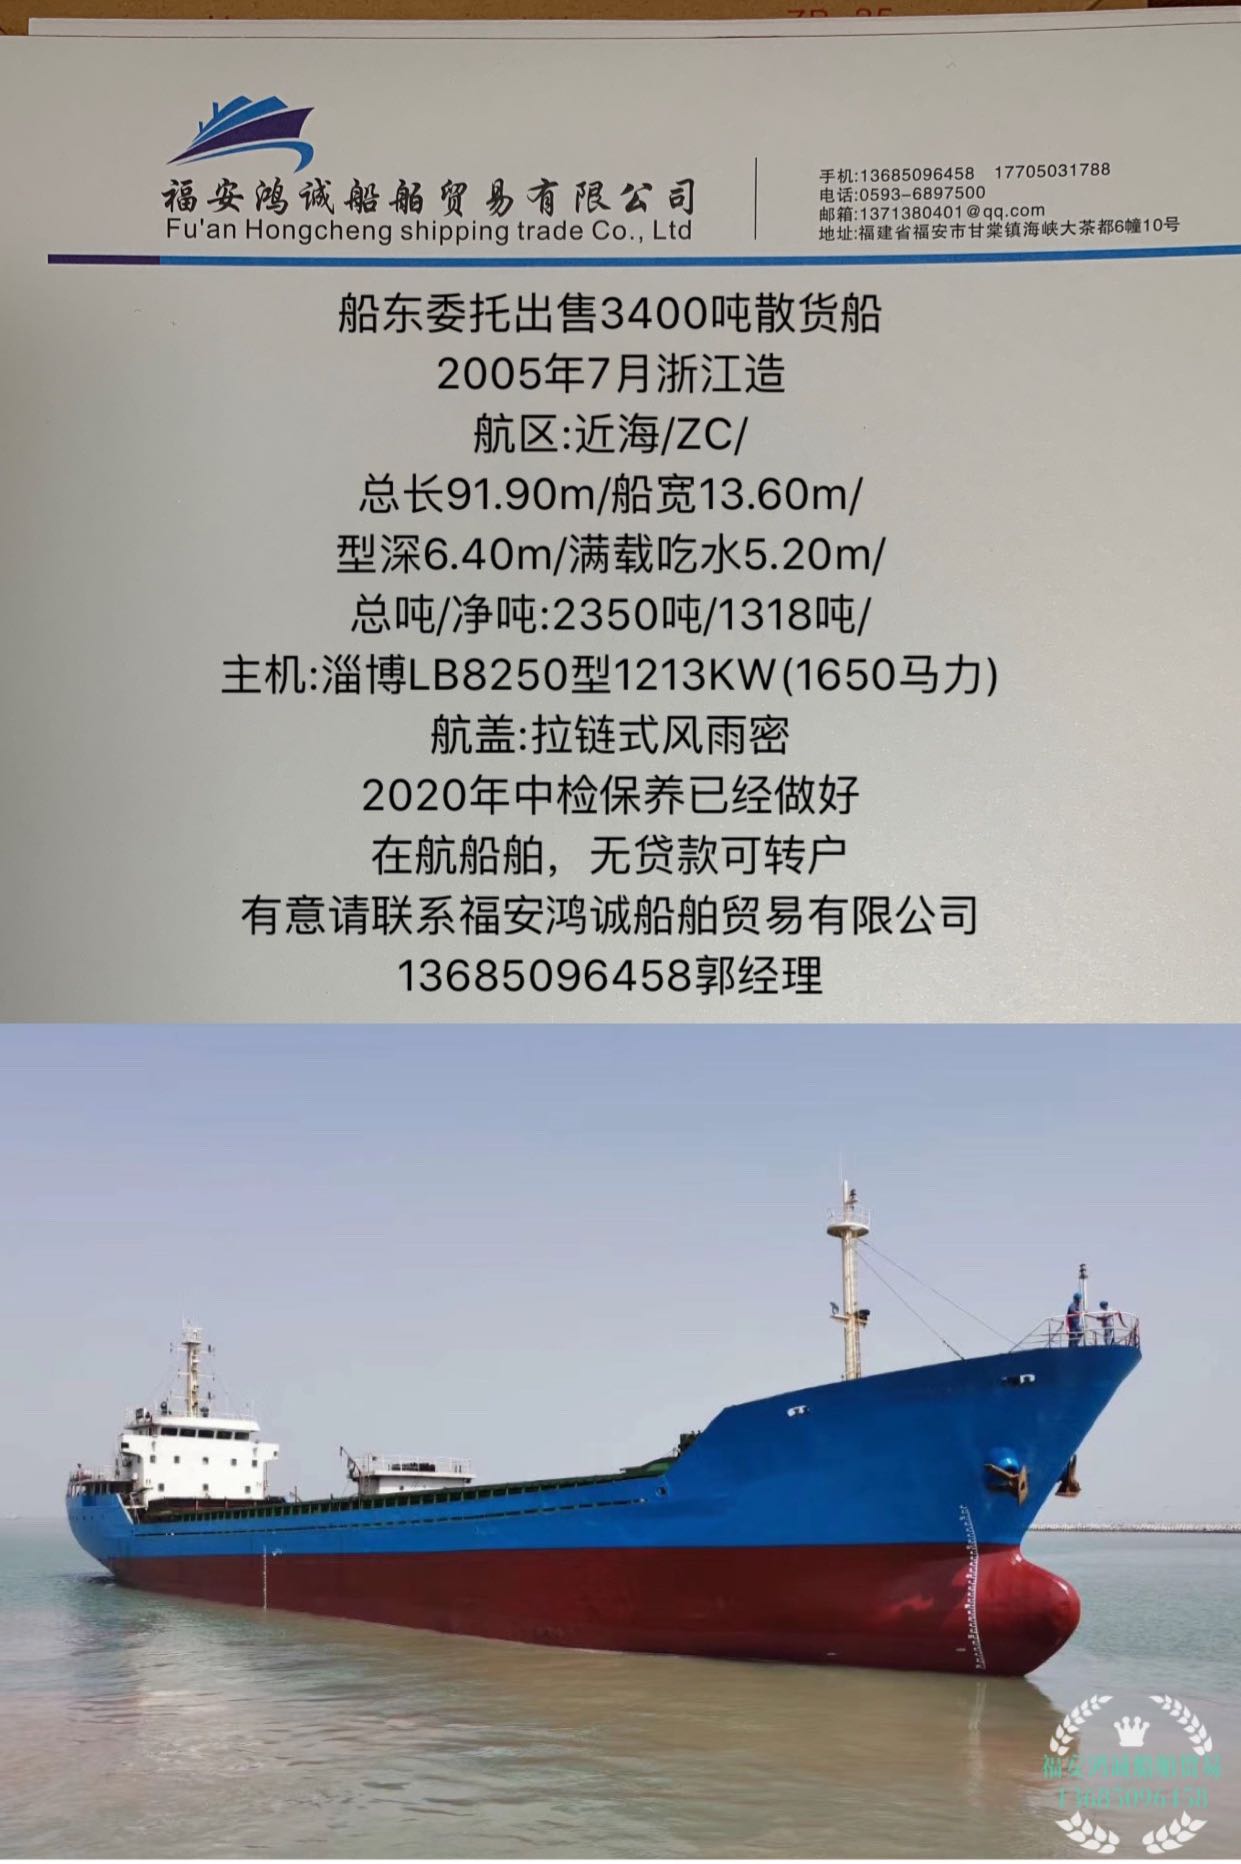 出售2005年造3400吨散货船